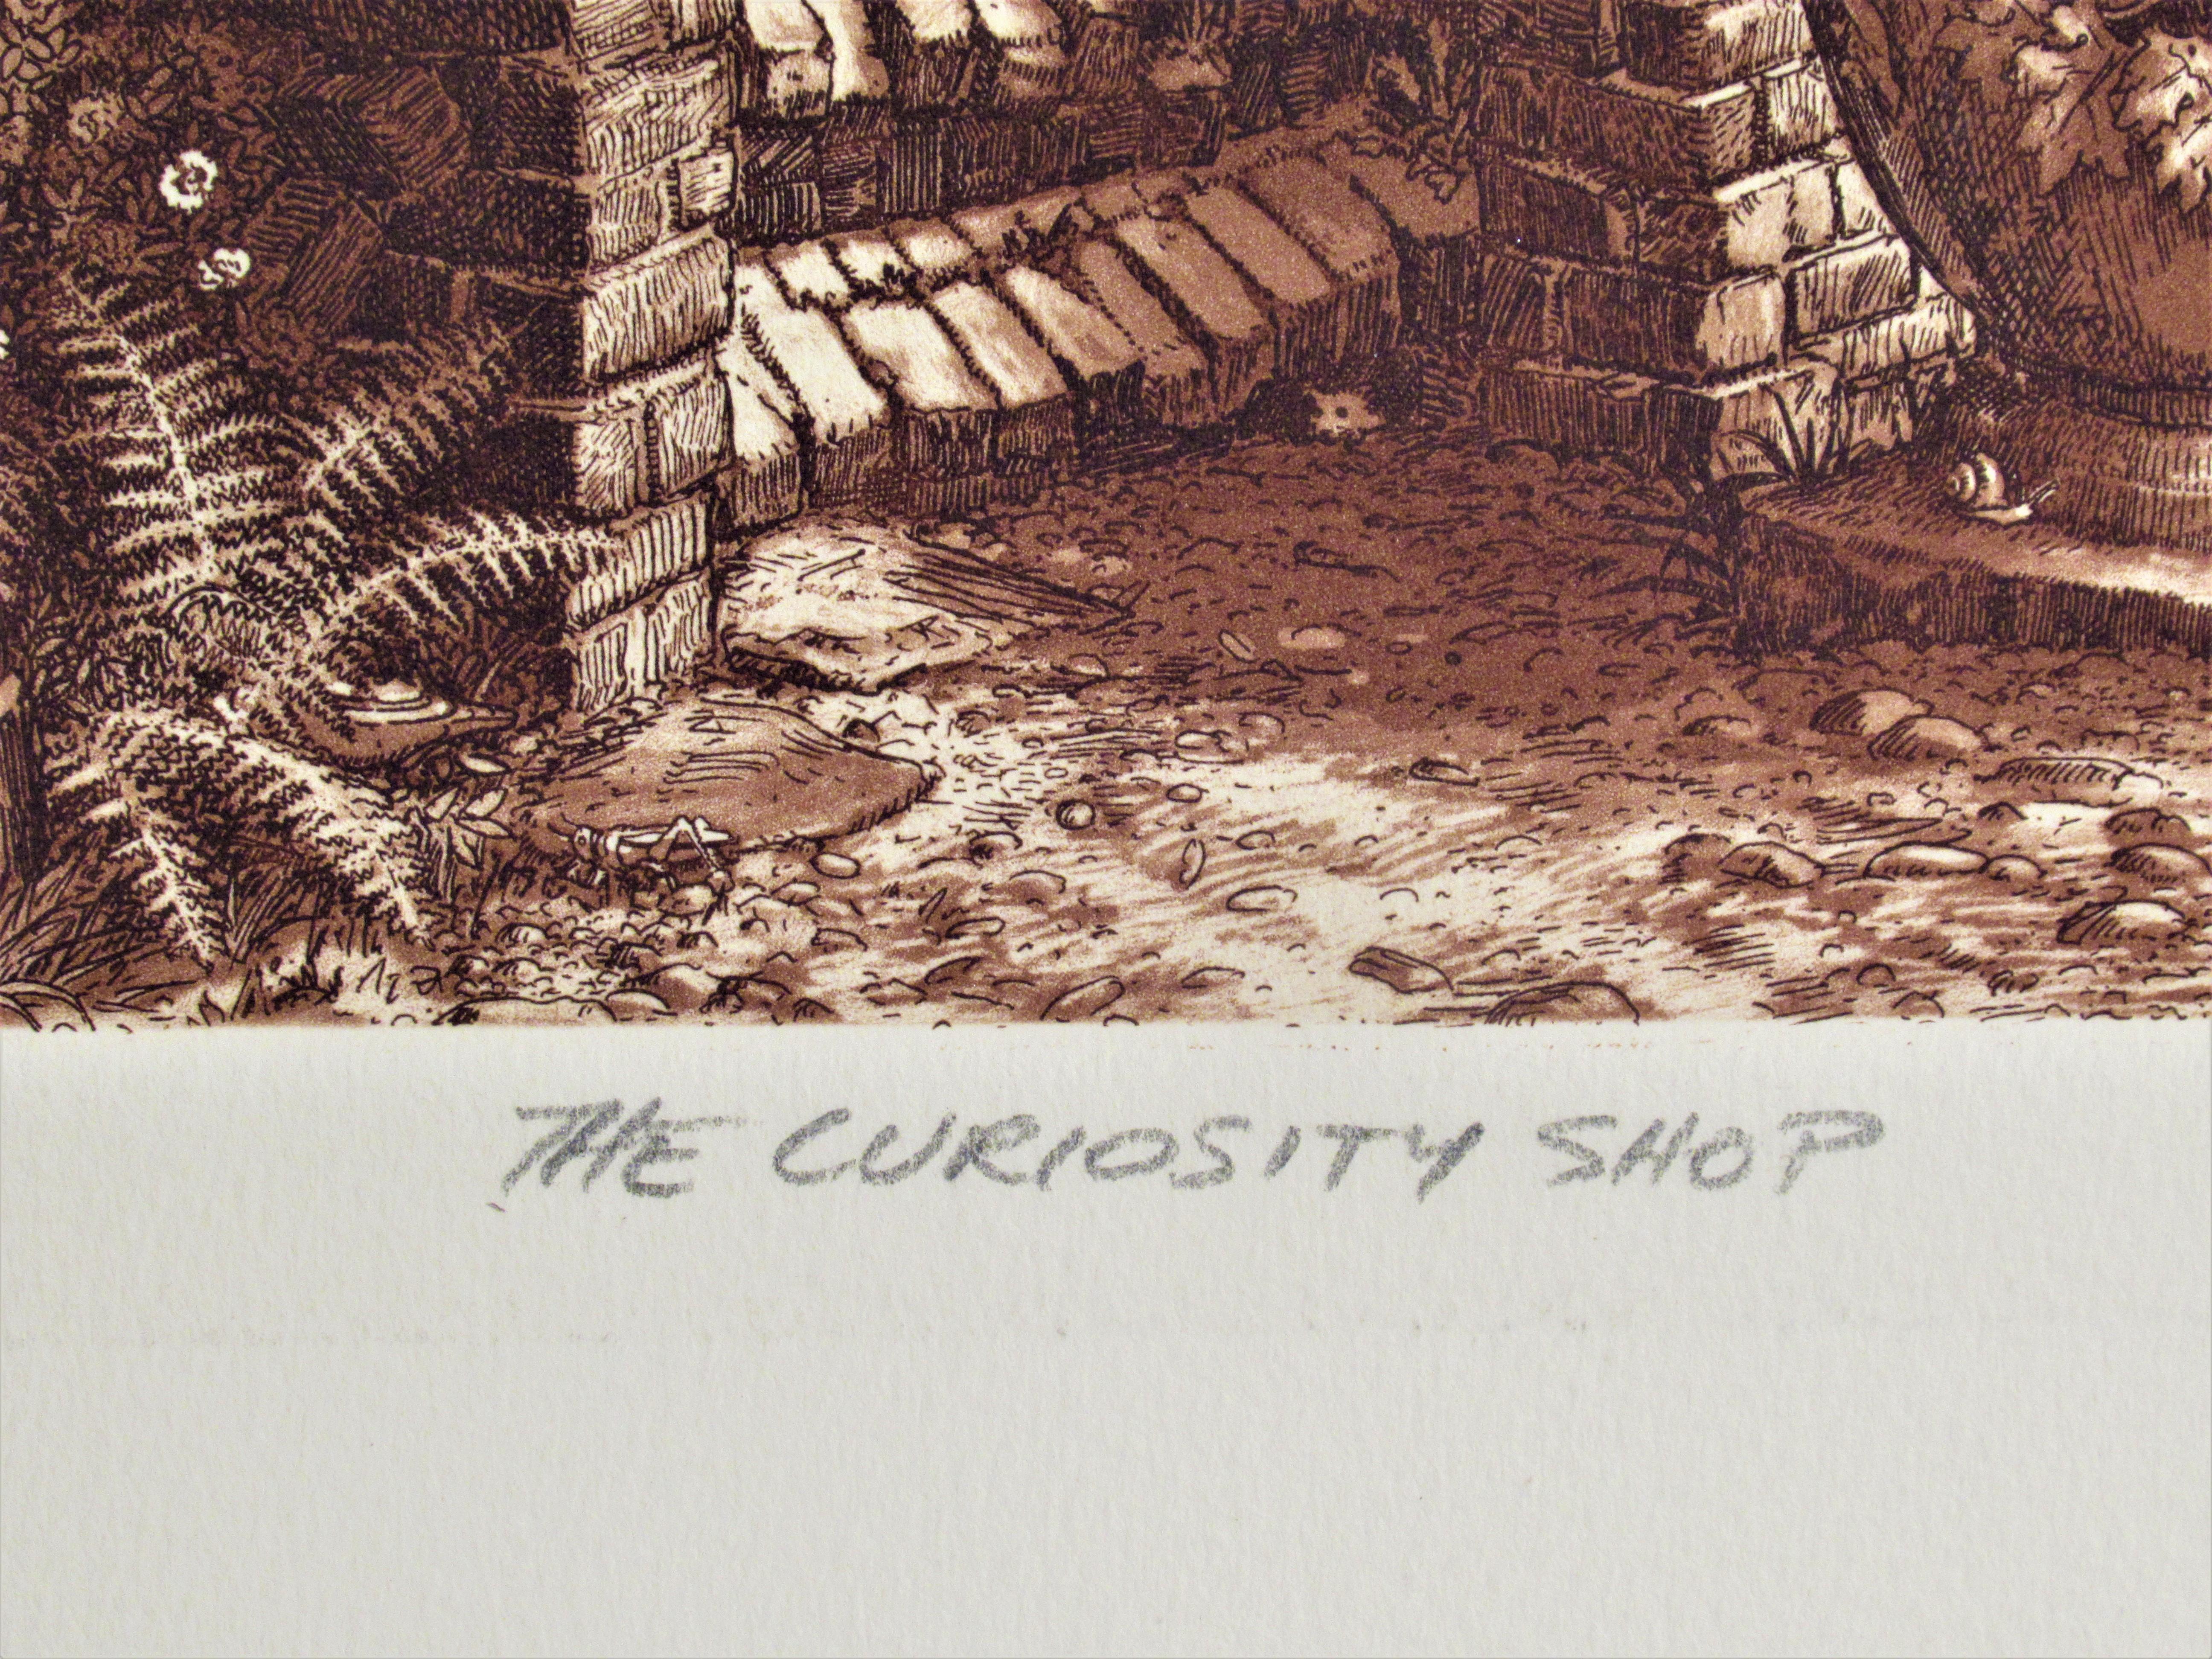 The Curiosity Shop - Beige Figurative Print by Scott Fitzgerald